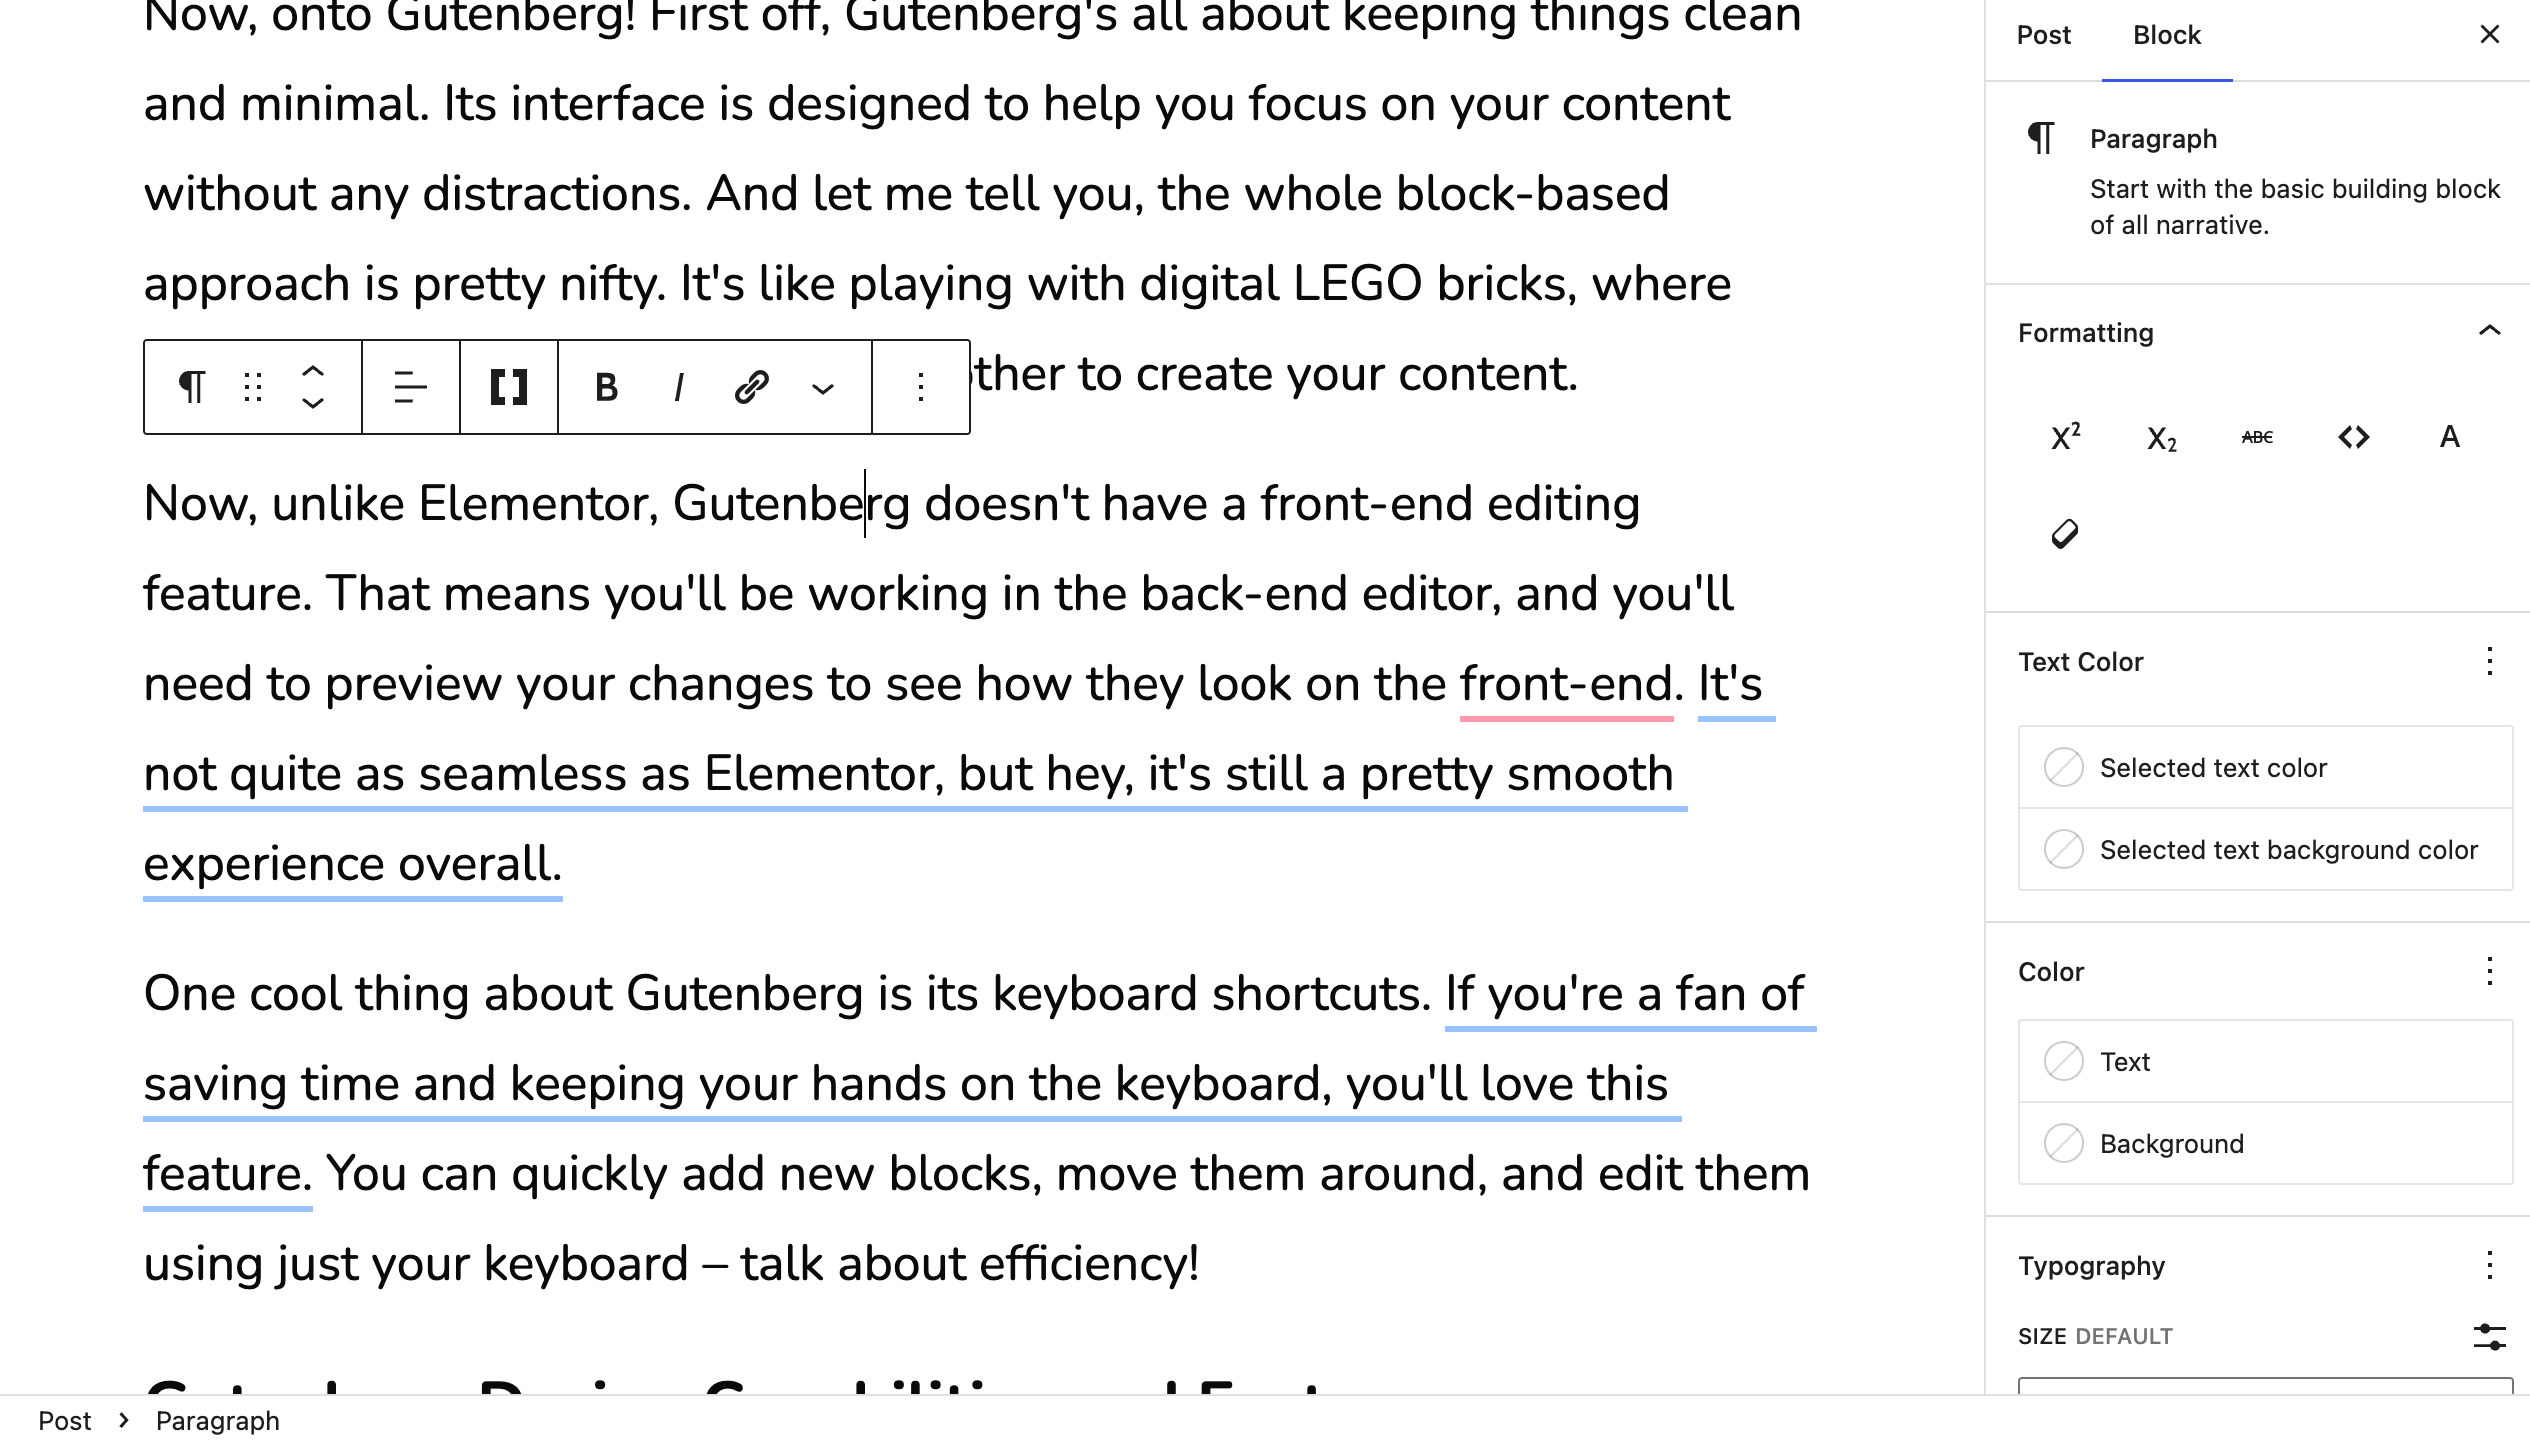 Using Gutenberg to edit